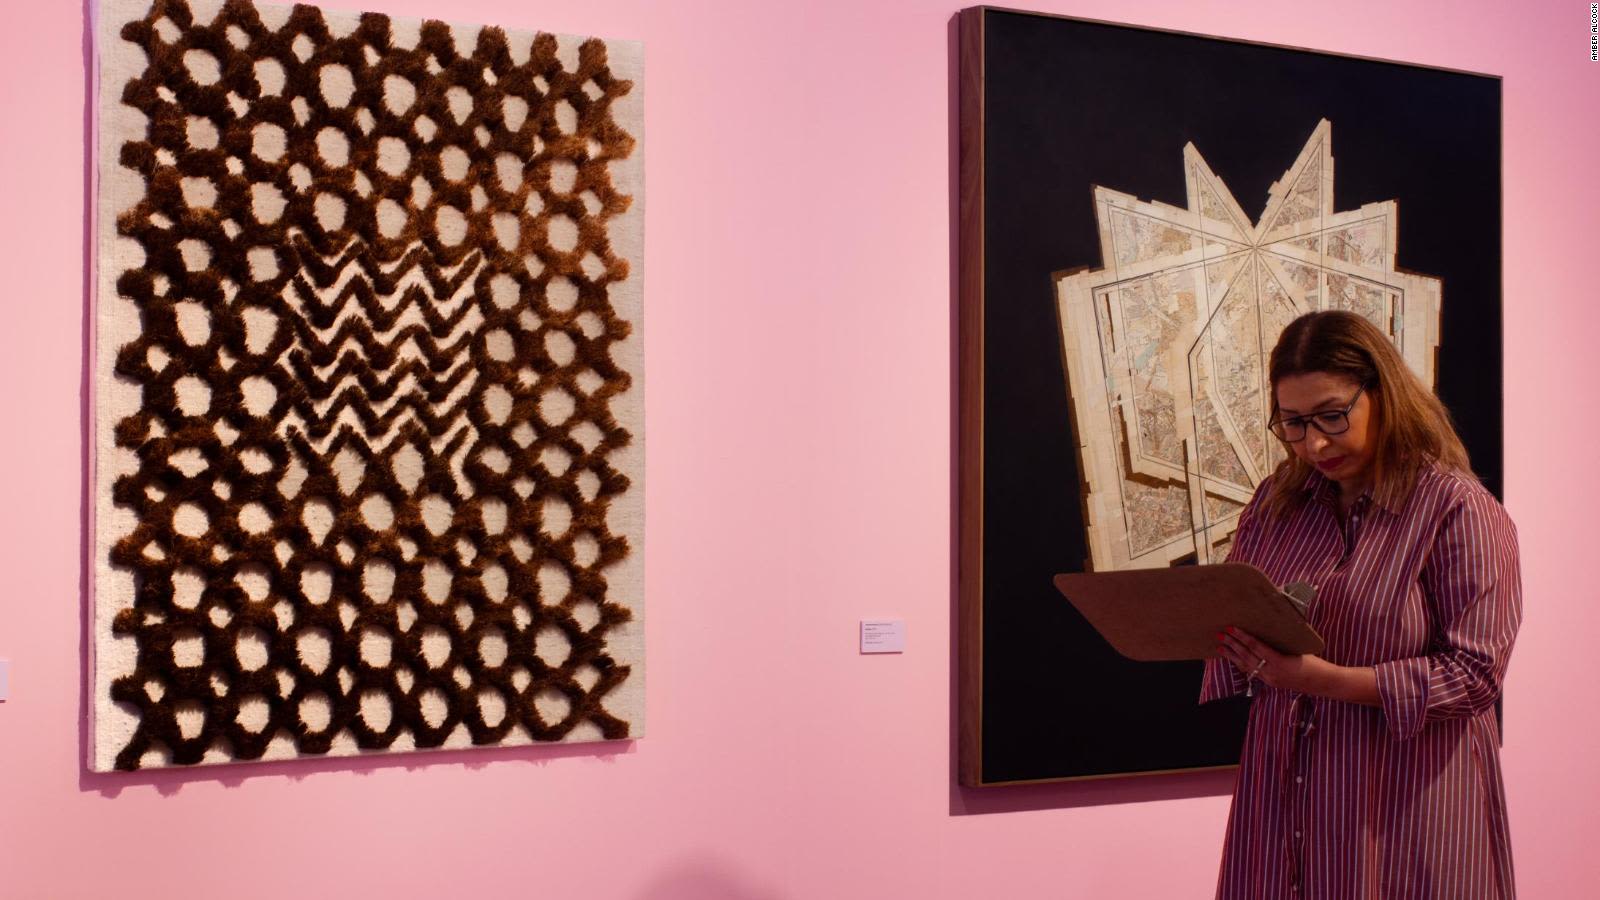 فنانة مغربية تعمل على تمكين المجتمعات الريفية تحصد جائزة أفريقية مرموقة للفن المعاصر